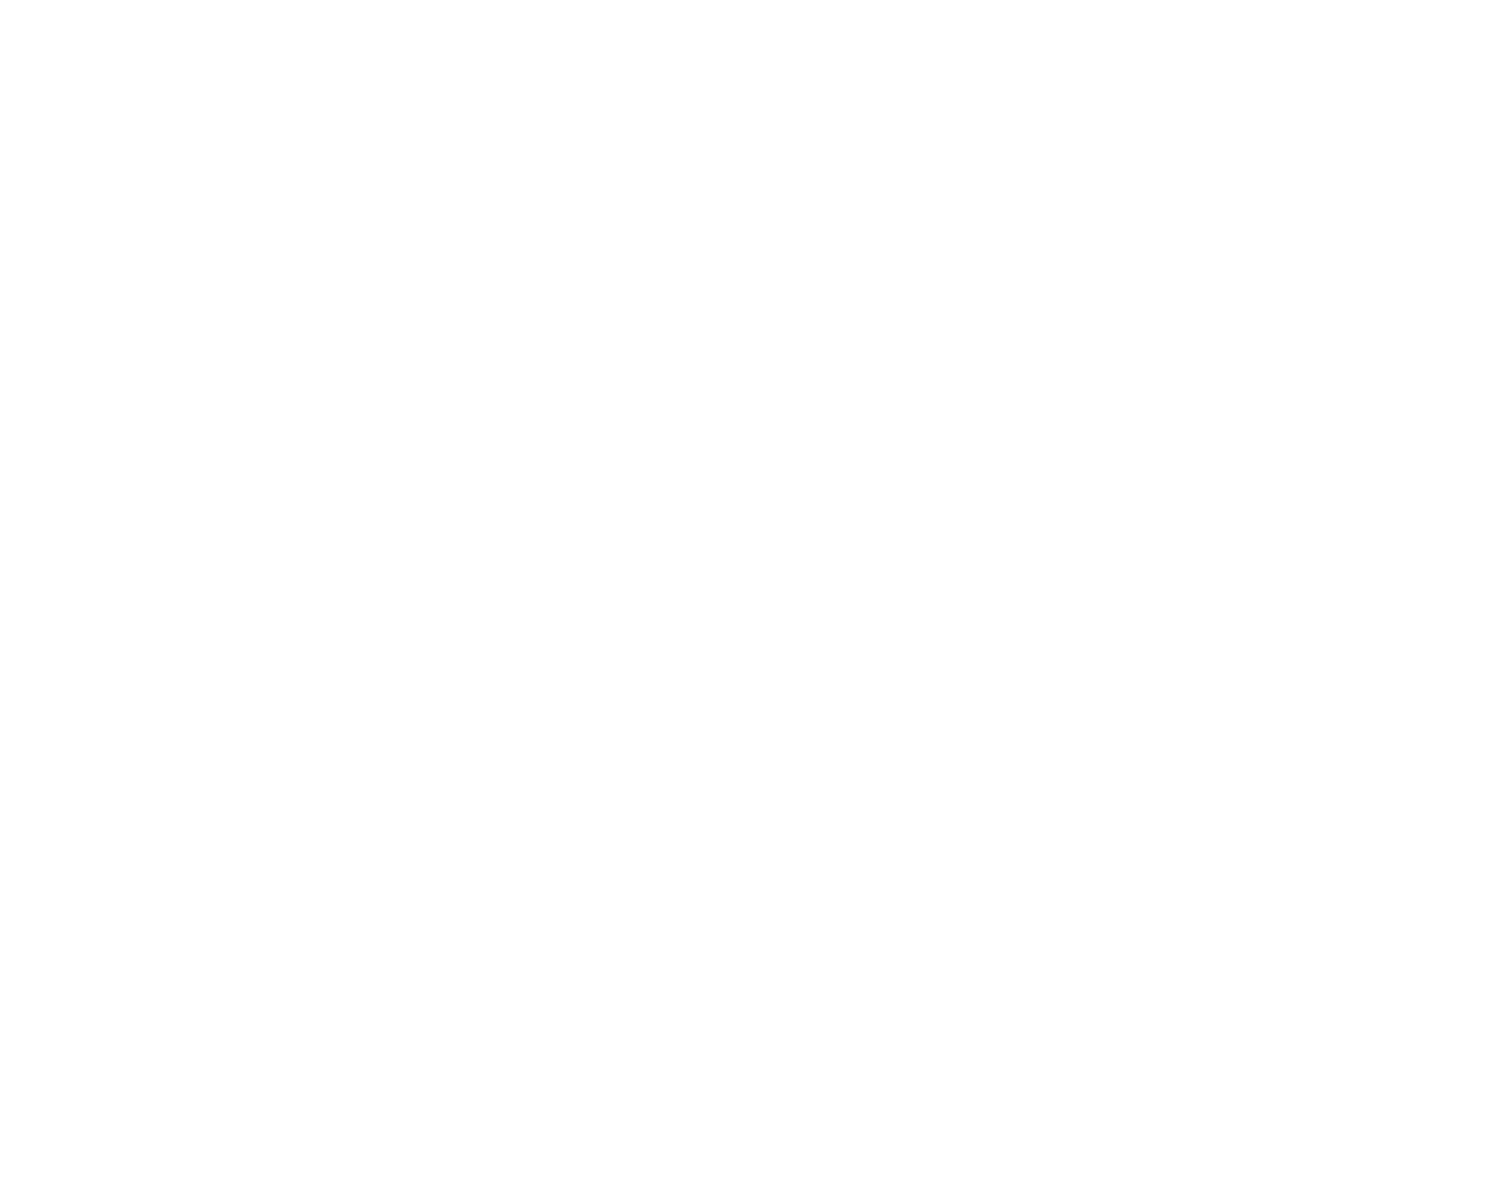 Washington CattleWomen